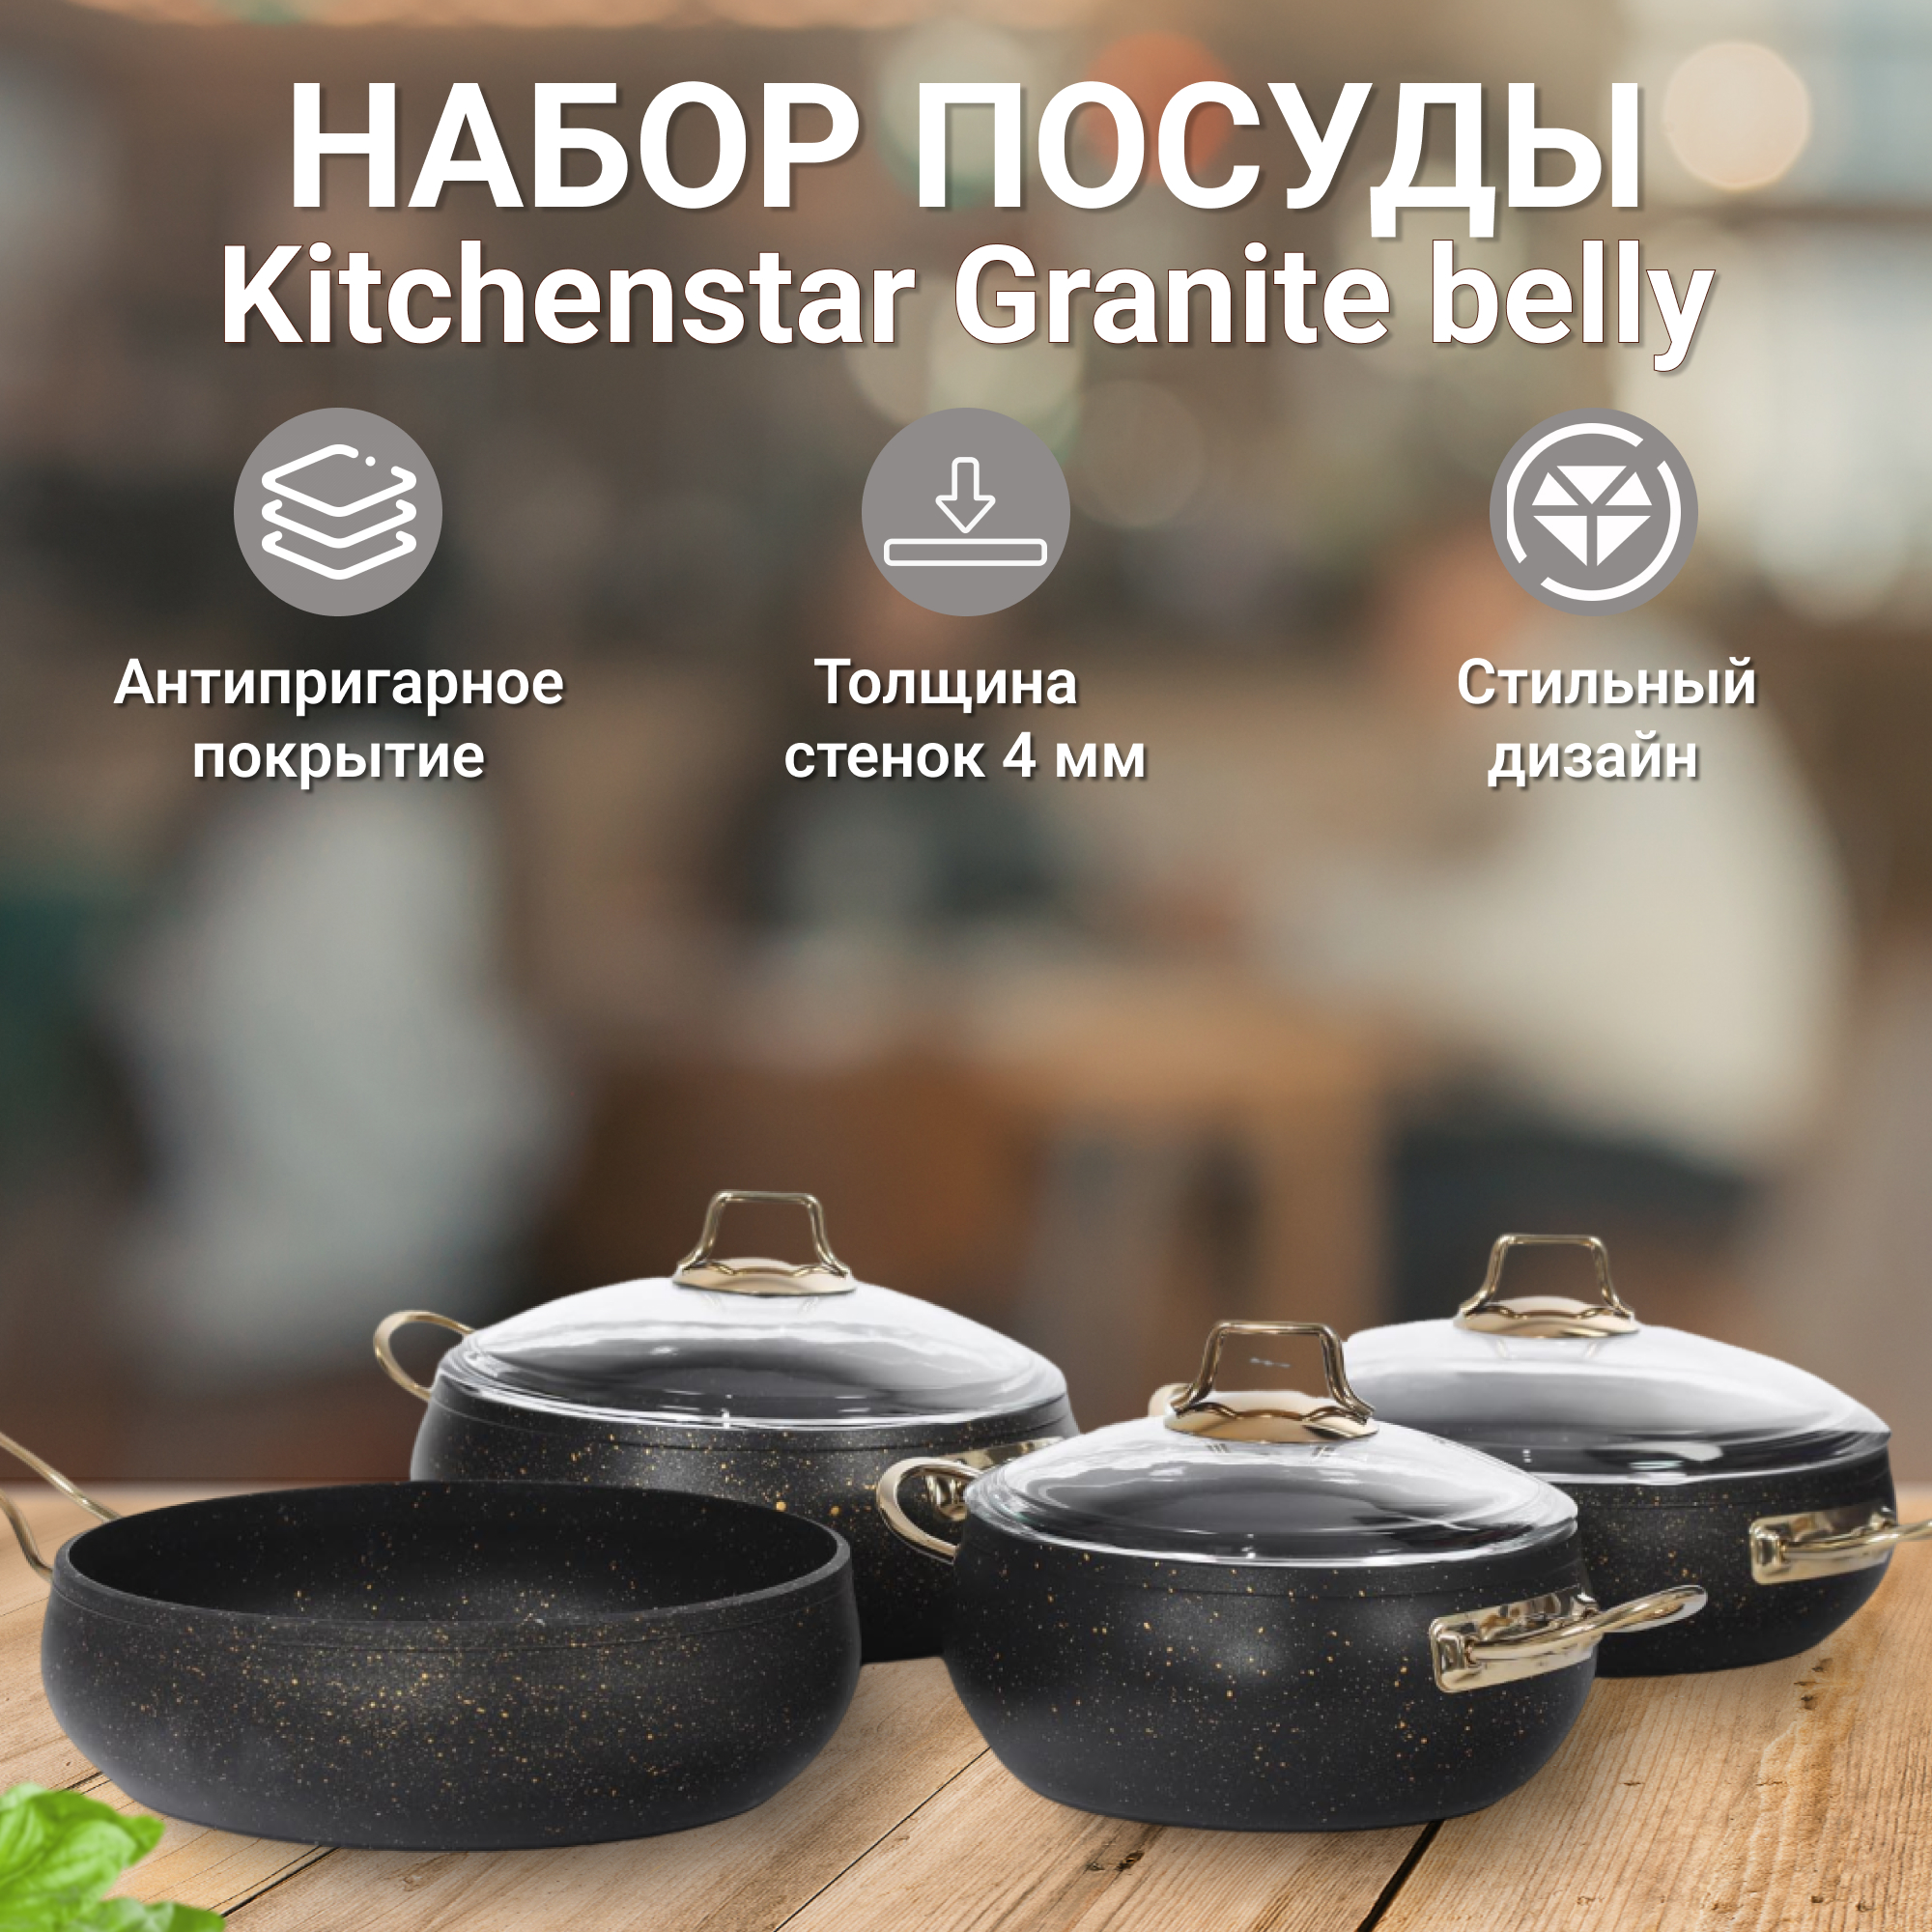 Набор посуды Kitchenstar Granite belly черный 7 предметов, цвет золотистый - фото 2